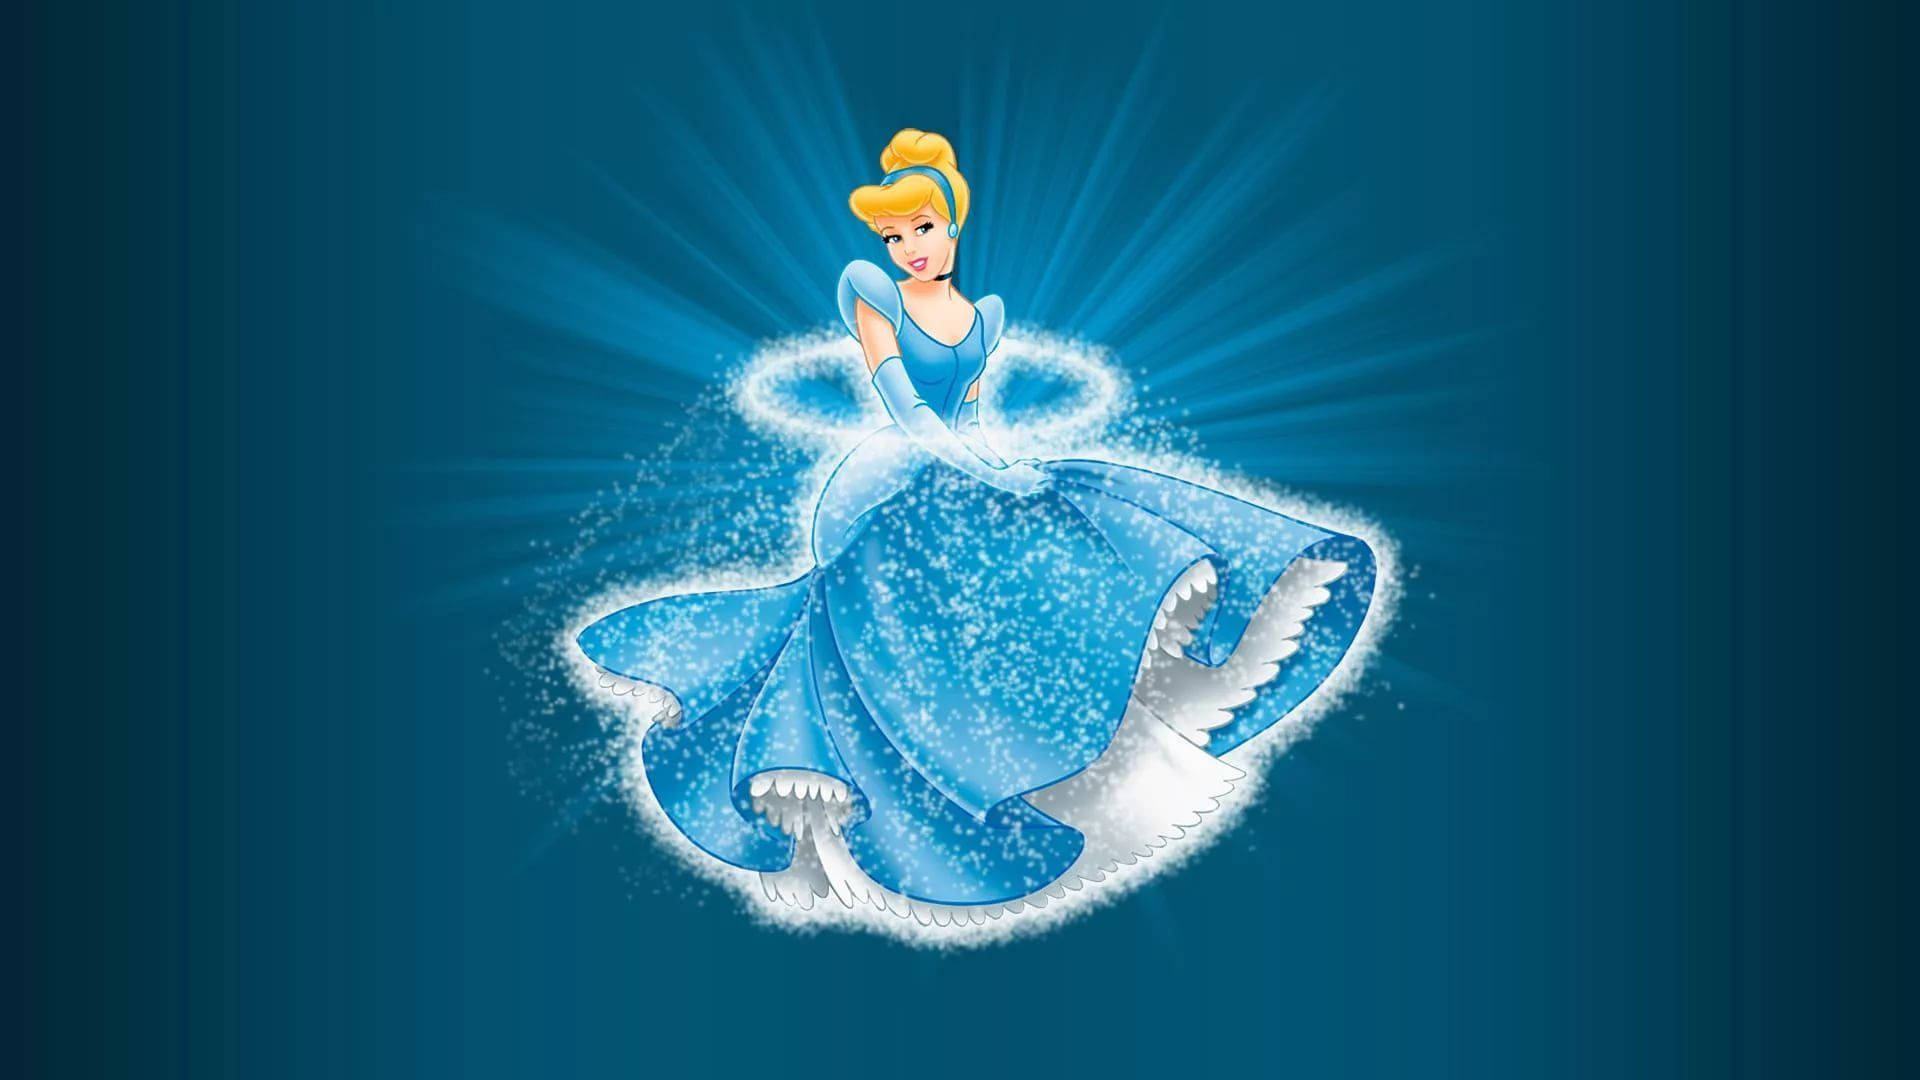 Sparkling Cinderella Illustration Wallpaper